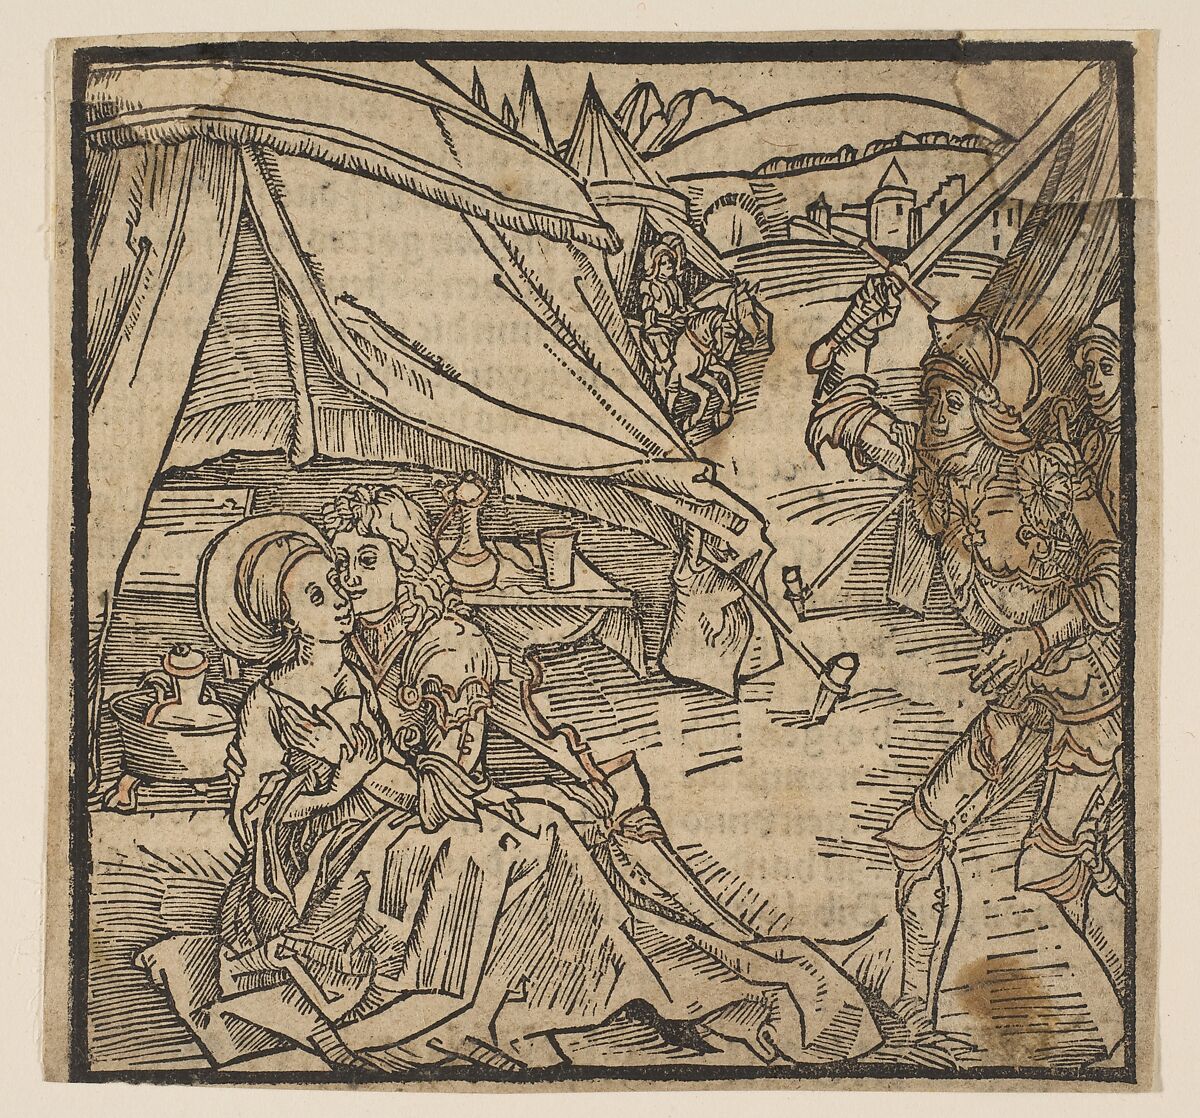 Illustration from "The Ritter von Turn", Albrecht Dürer (German, Nuremberg 1471–1528 Nuremberg), Woodcut 